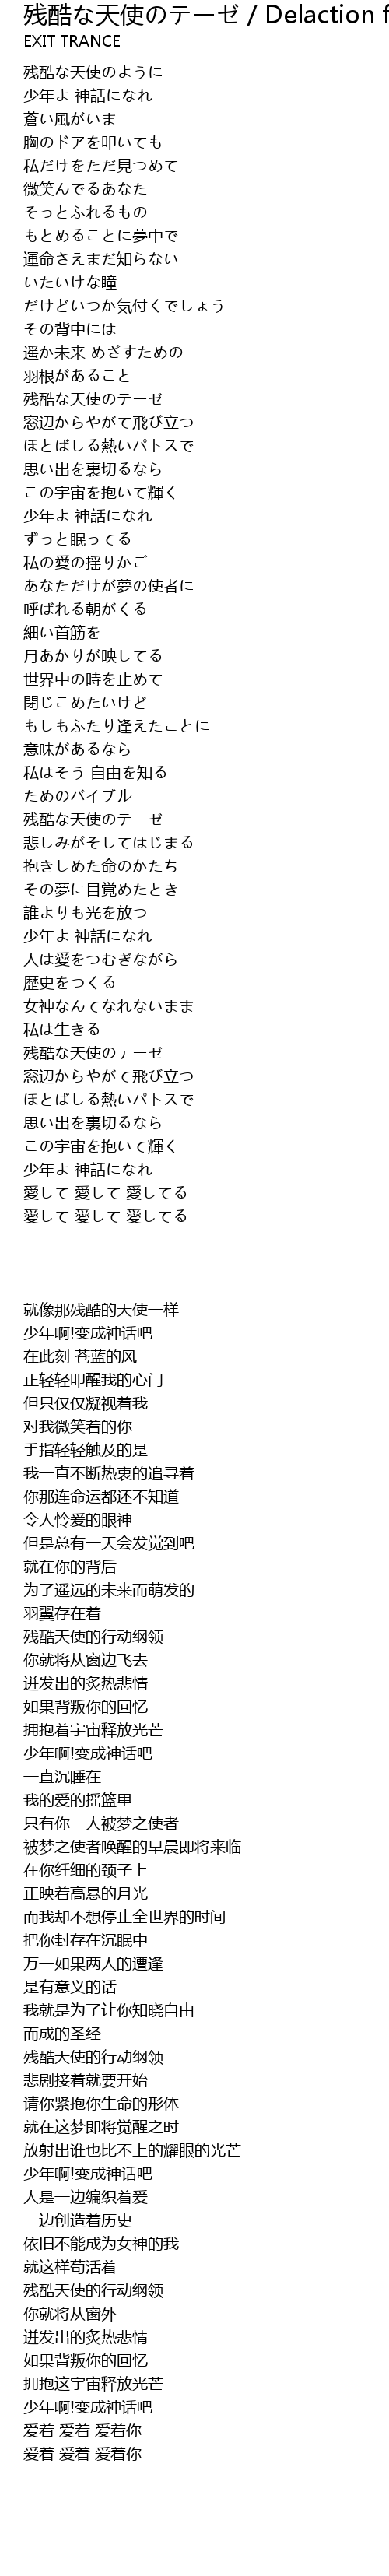 残酷な天使のテーゼ Delaction Feat Chika Can Ku Tian Shi Delaction Feat Chika Lyrics Follow Lyrics